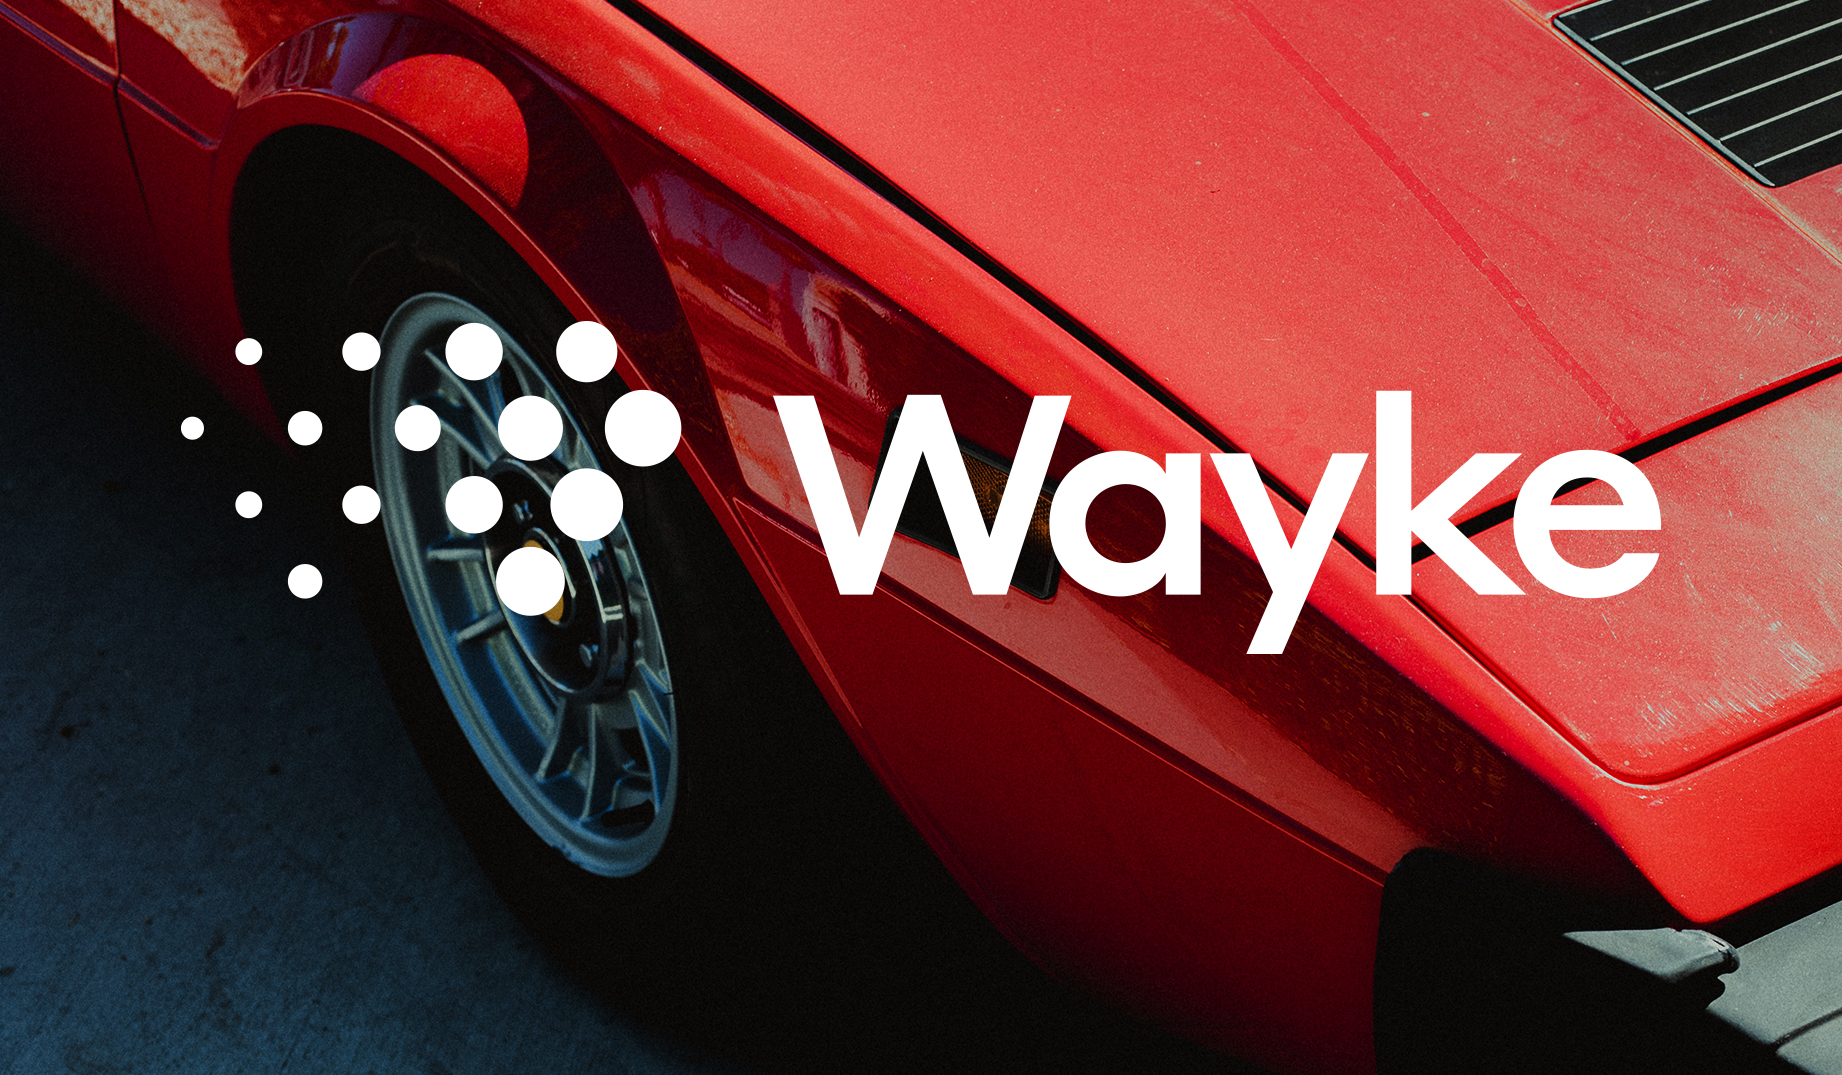 Wayke [website]